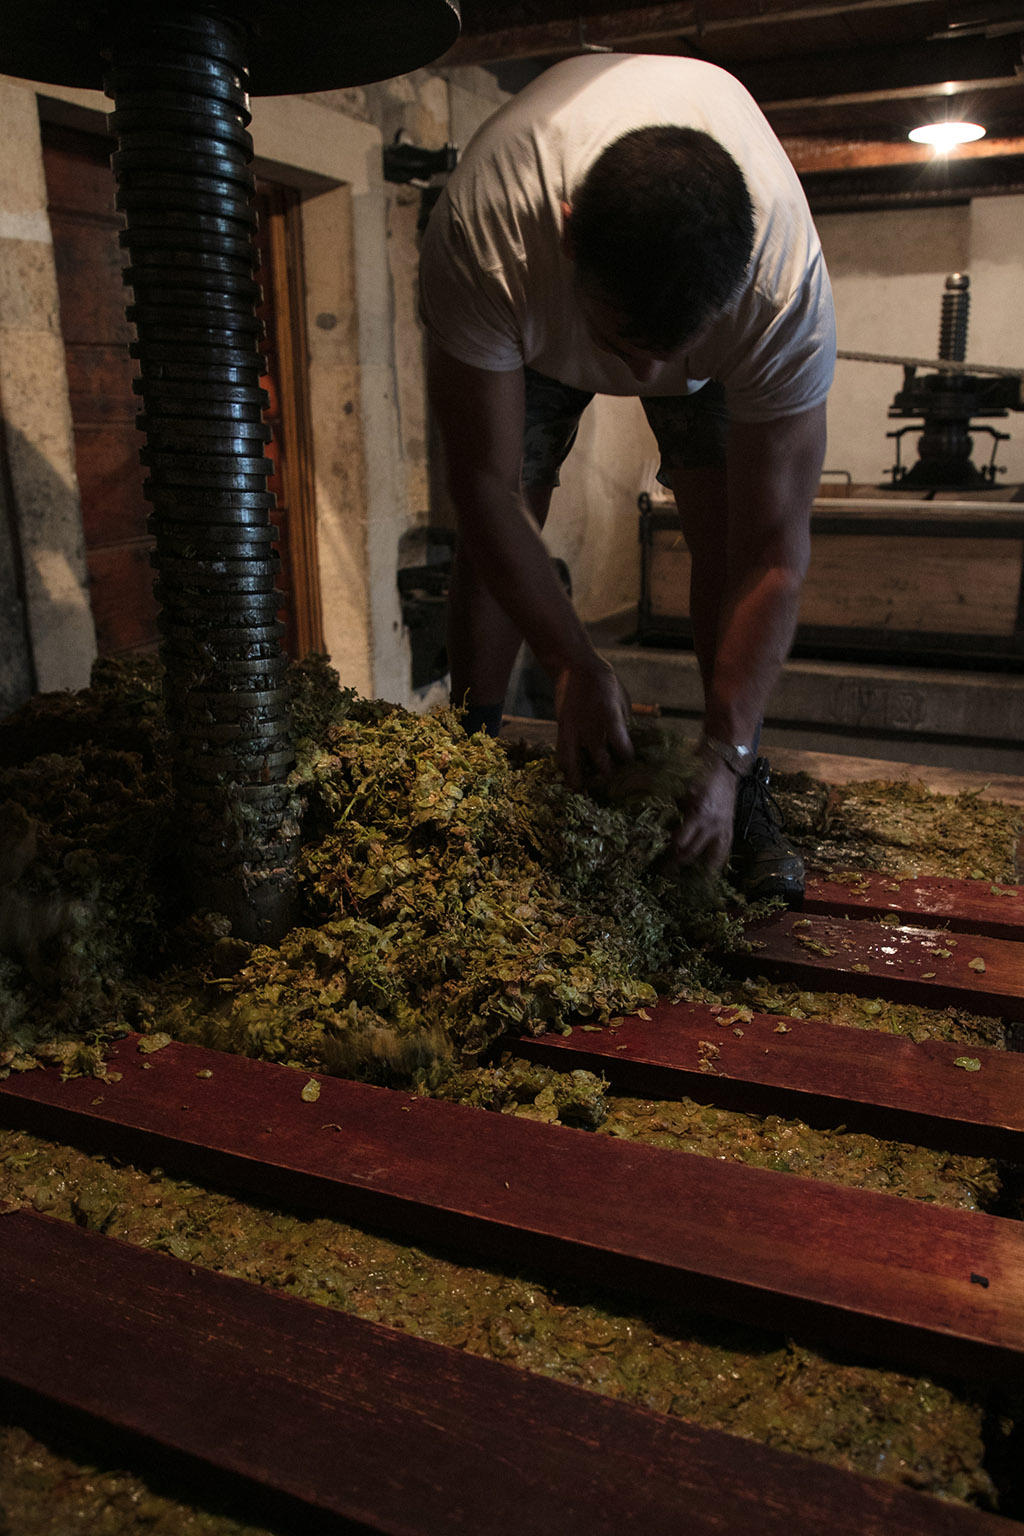 мужчина убирает остатки прессованного винограда